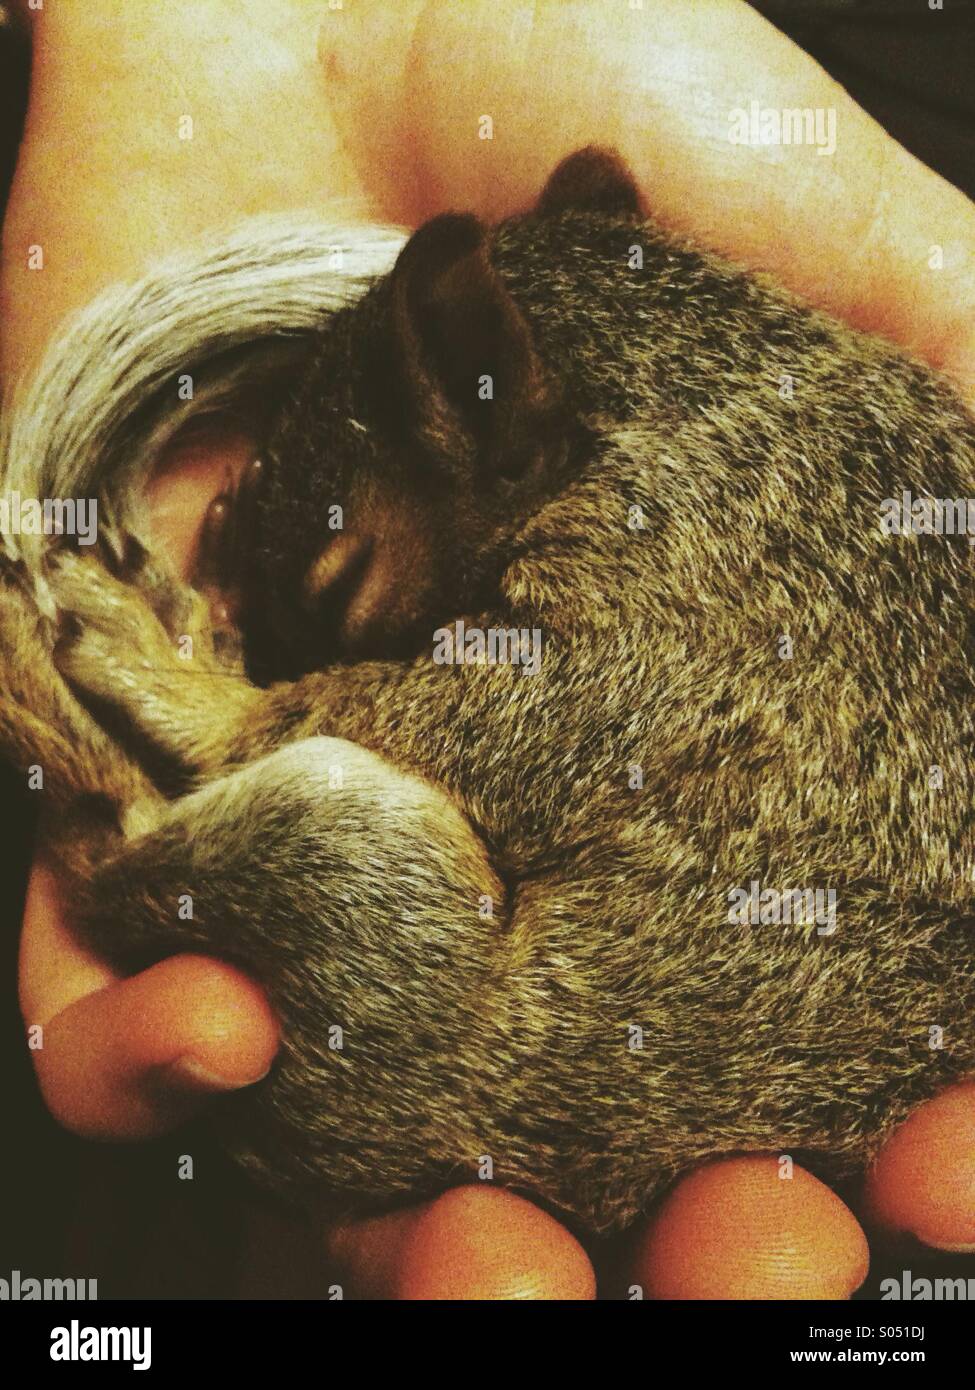 Sleeping baby écureuil dans la paume de la main Banque D'Images